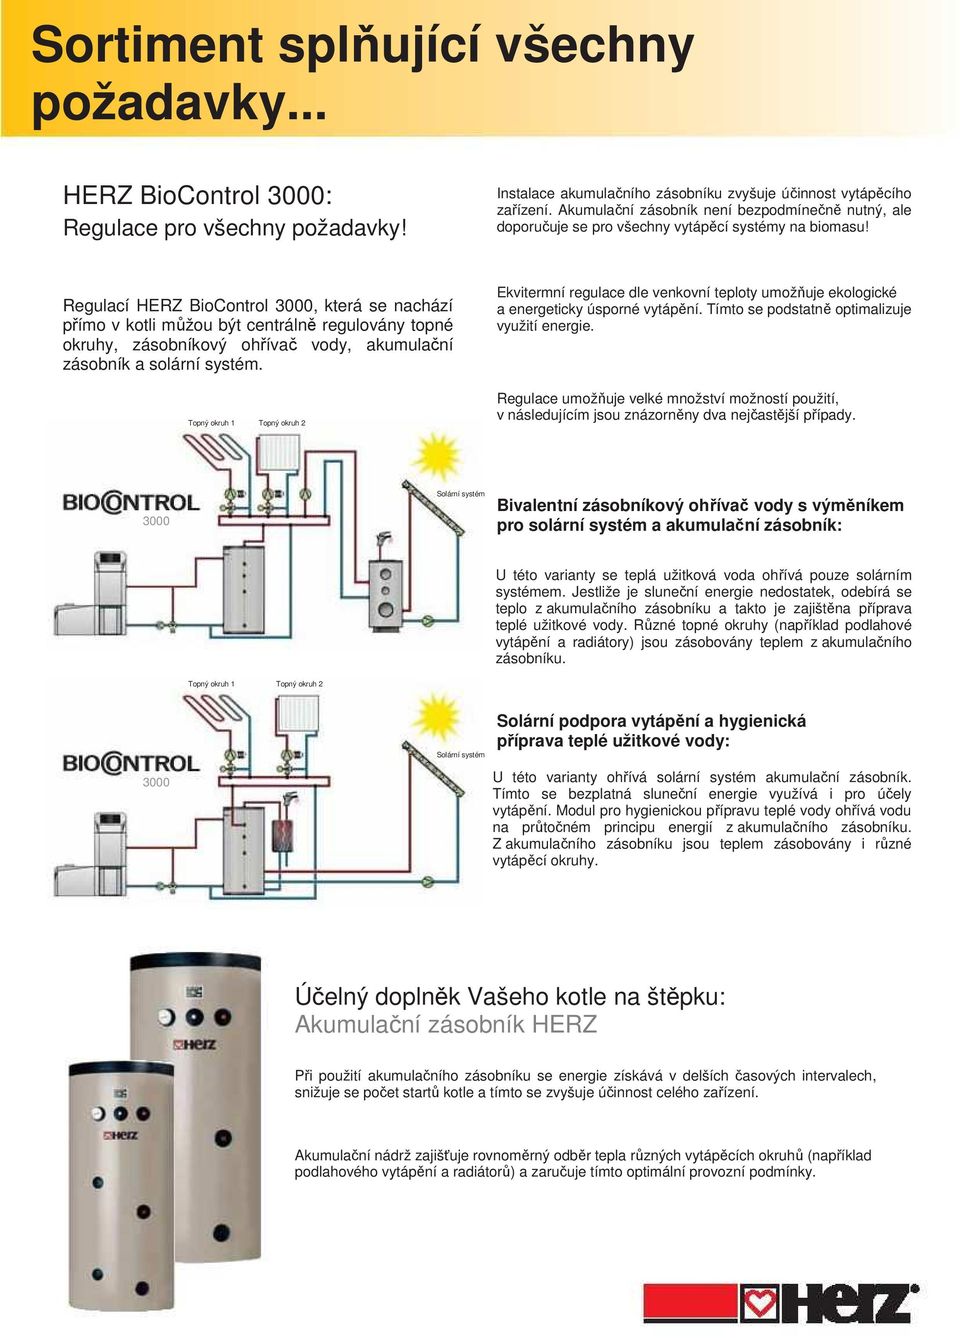 Regulací HERZ BioControl 3000, která se nachází přímo v kotli můžou být centrálně regulovány topné okruhy, zásobníkový ohřívač vody, akumulační zásobník a solární systém.